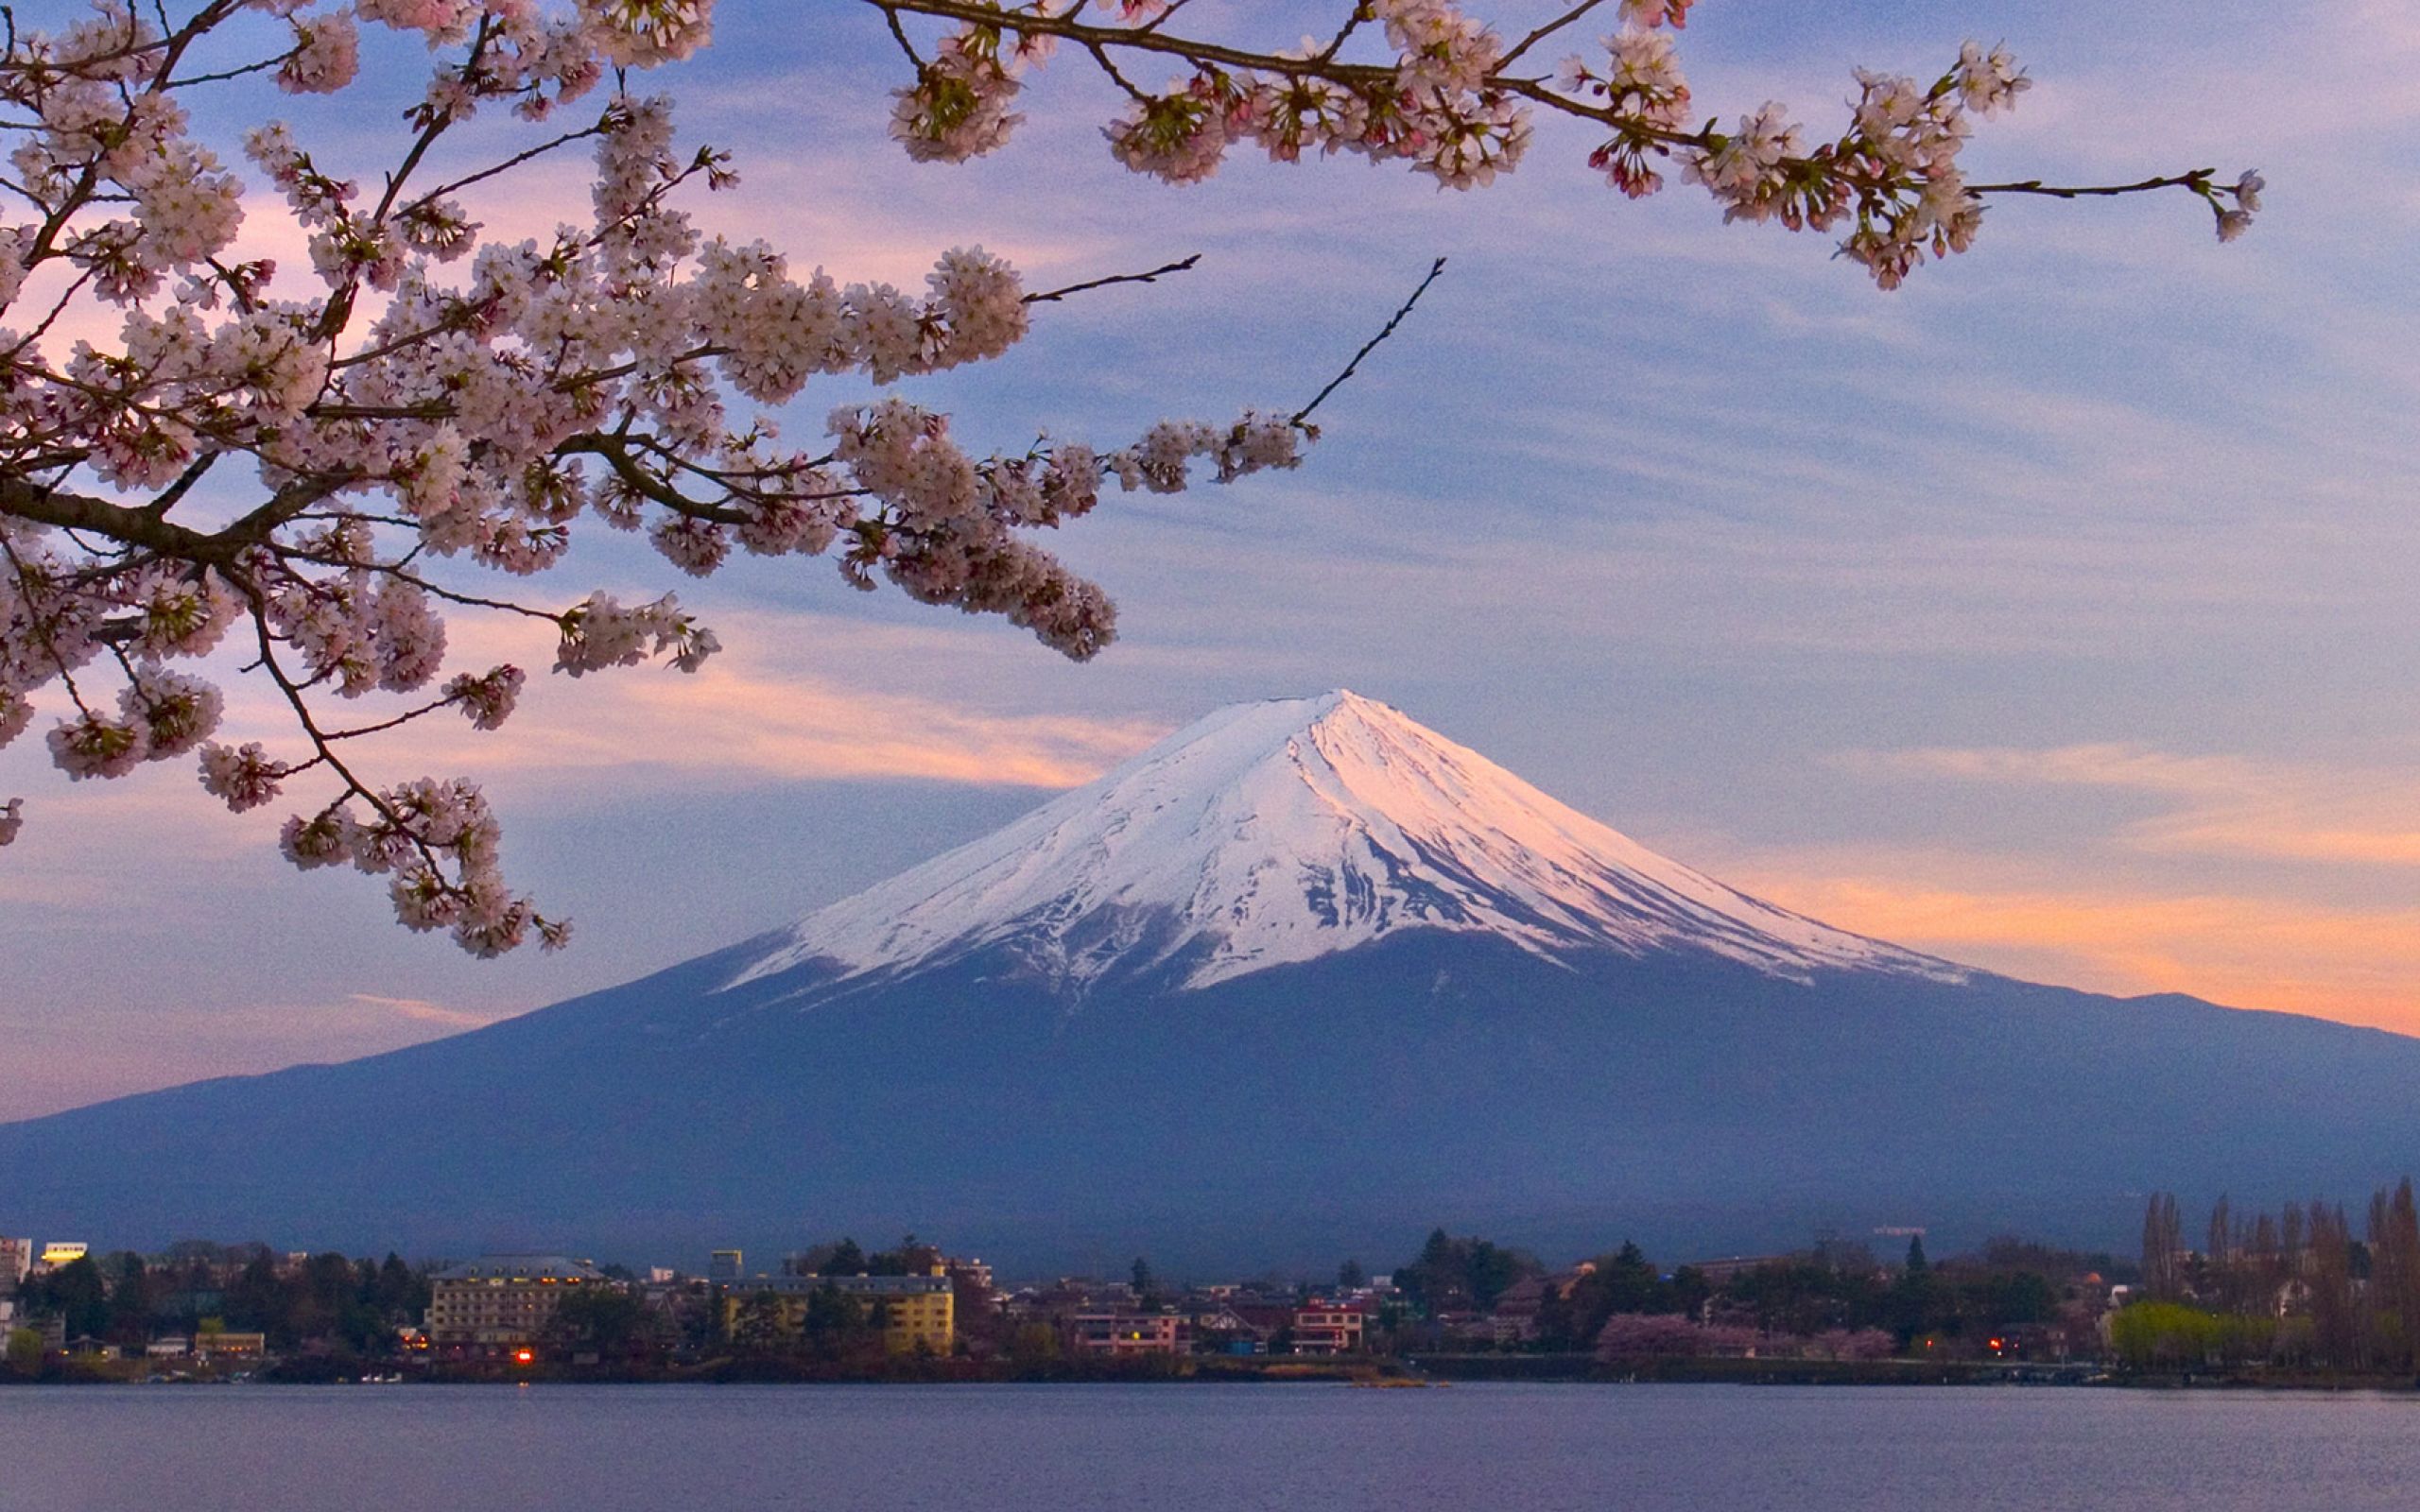 Фудзи чита сайт. Химедзи (остров Хонсю). Фудзияма Япония. Гора Фудзияма в Японии. Токио вулкан Фудзияма.